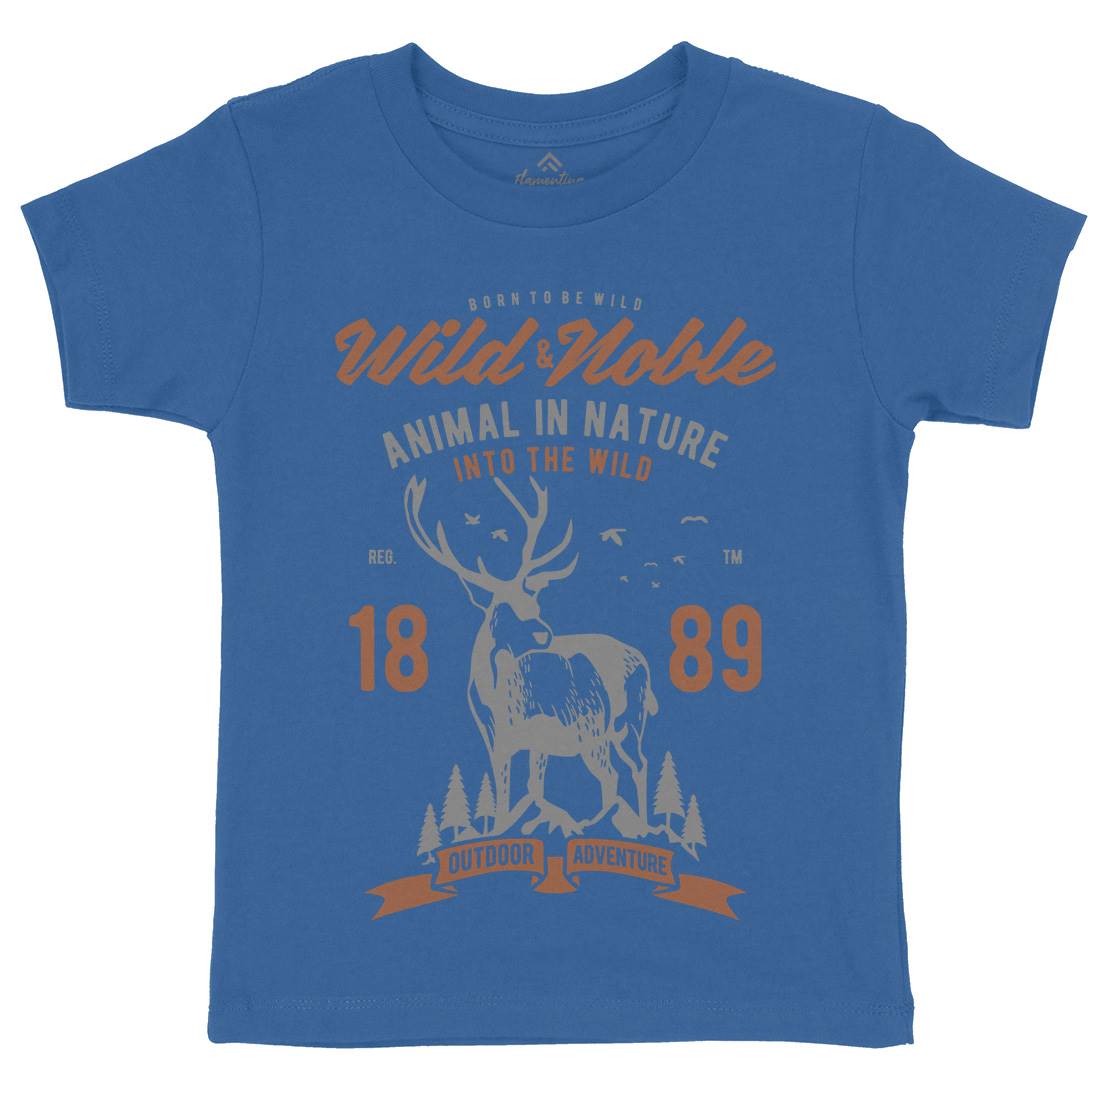 Wild And Noble Kids Organic Crew Neck T-Shirt Animals B472